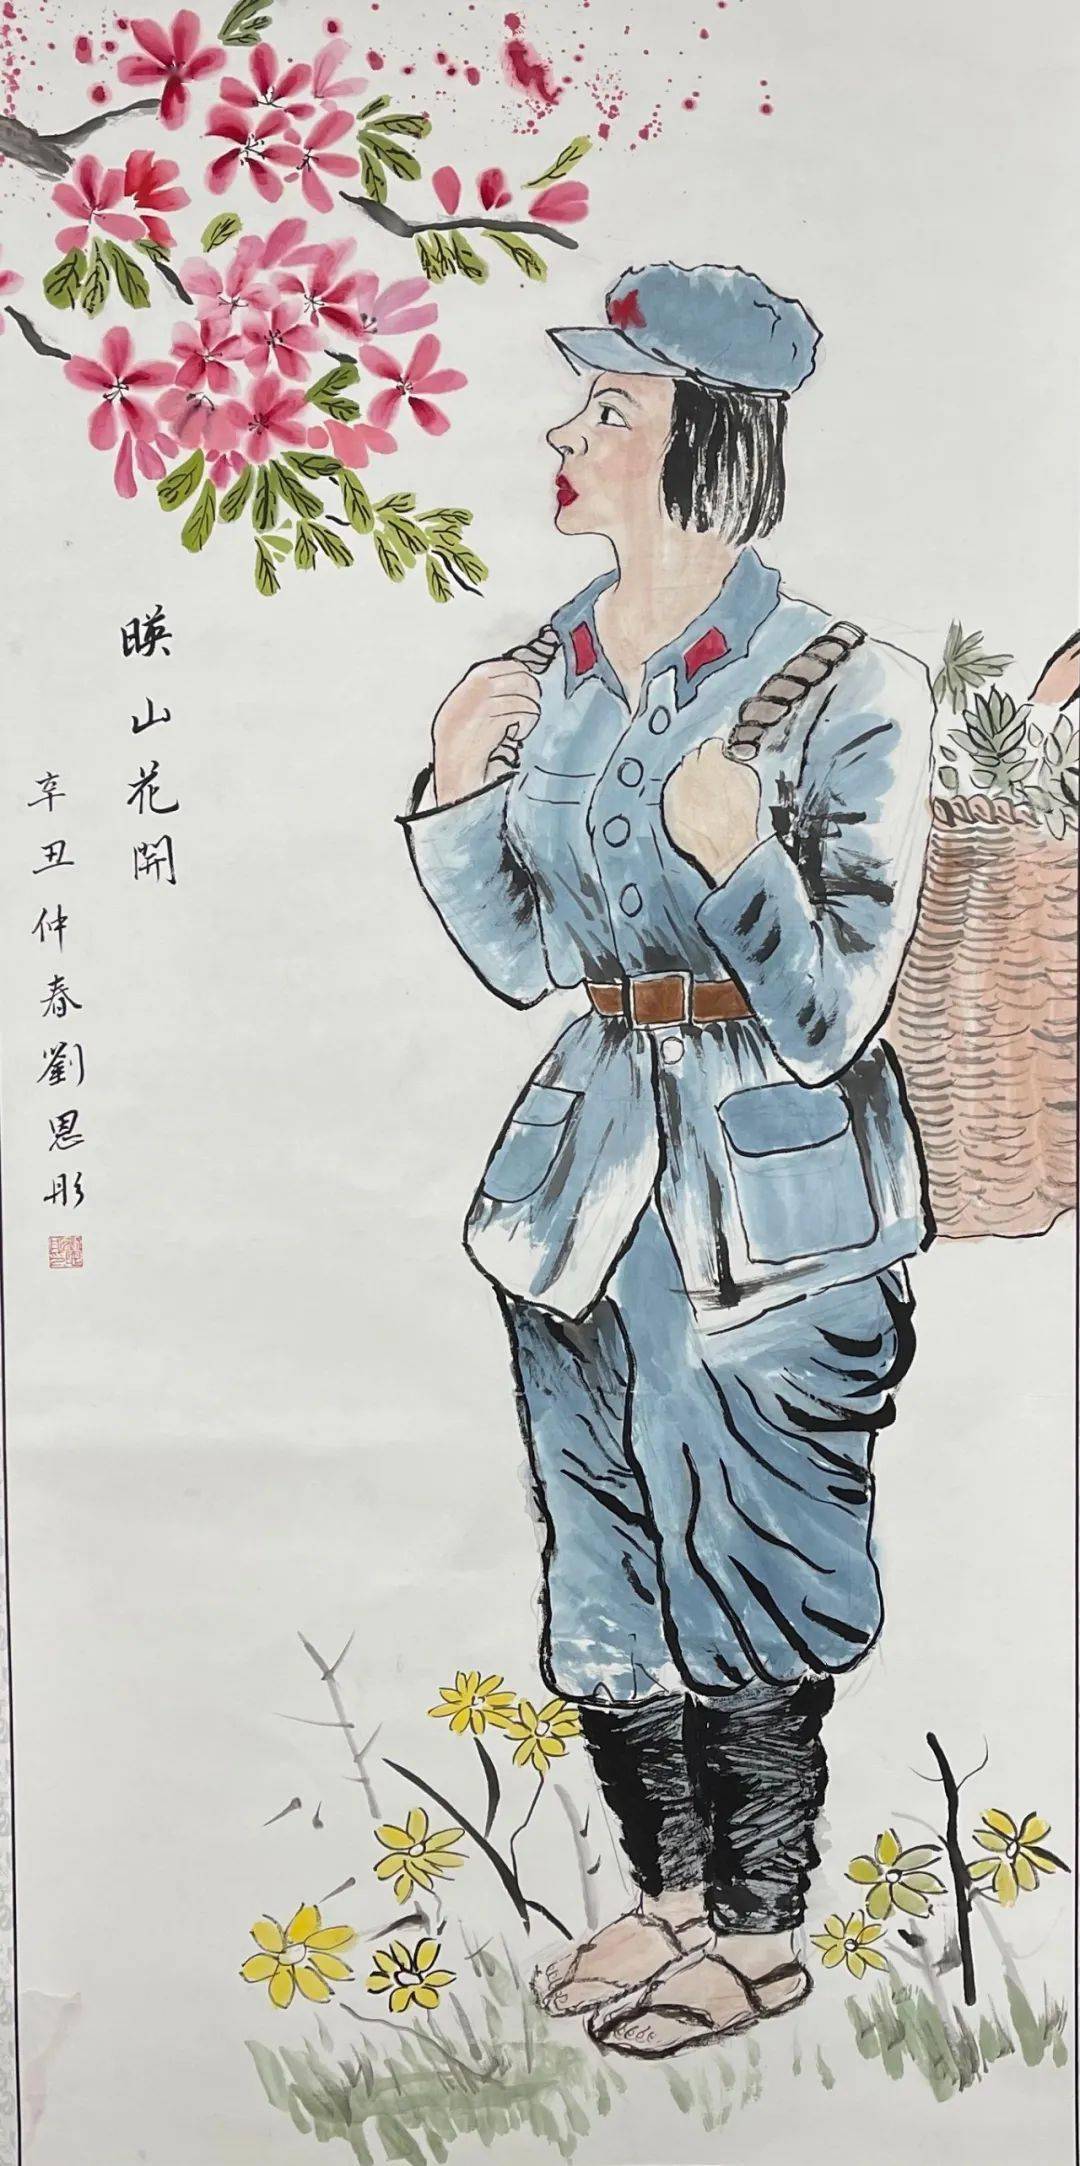 描绘中国梦传递爱国情教育筑梦礼赞百年活动迎来第六批绘画作品展示